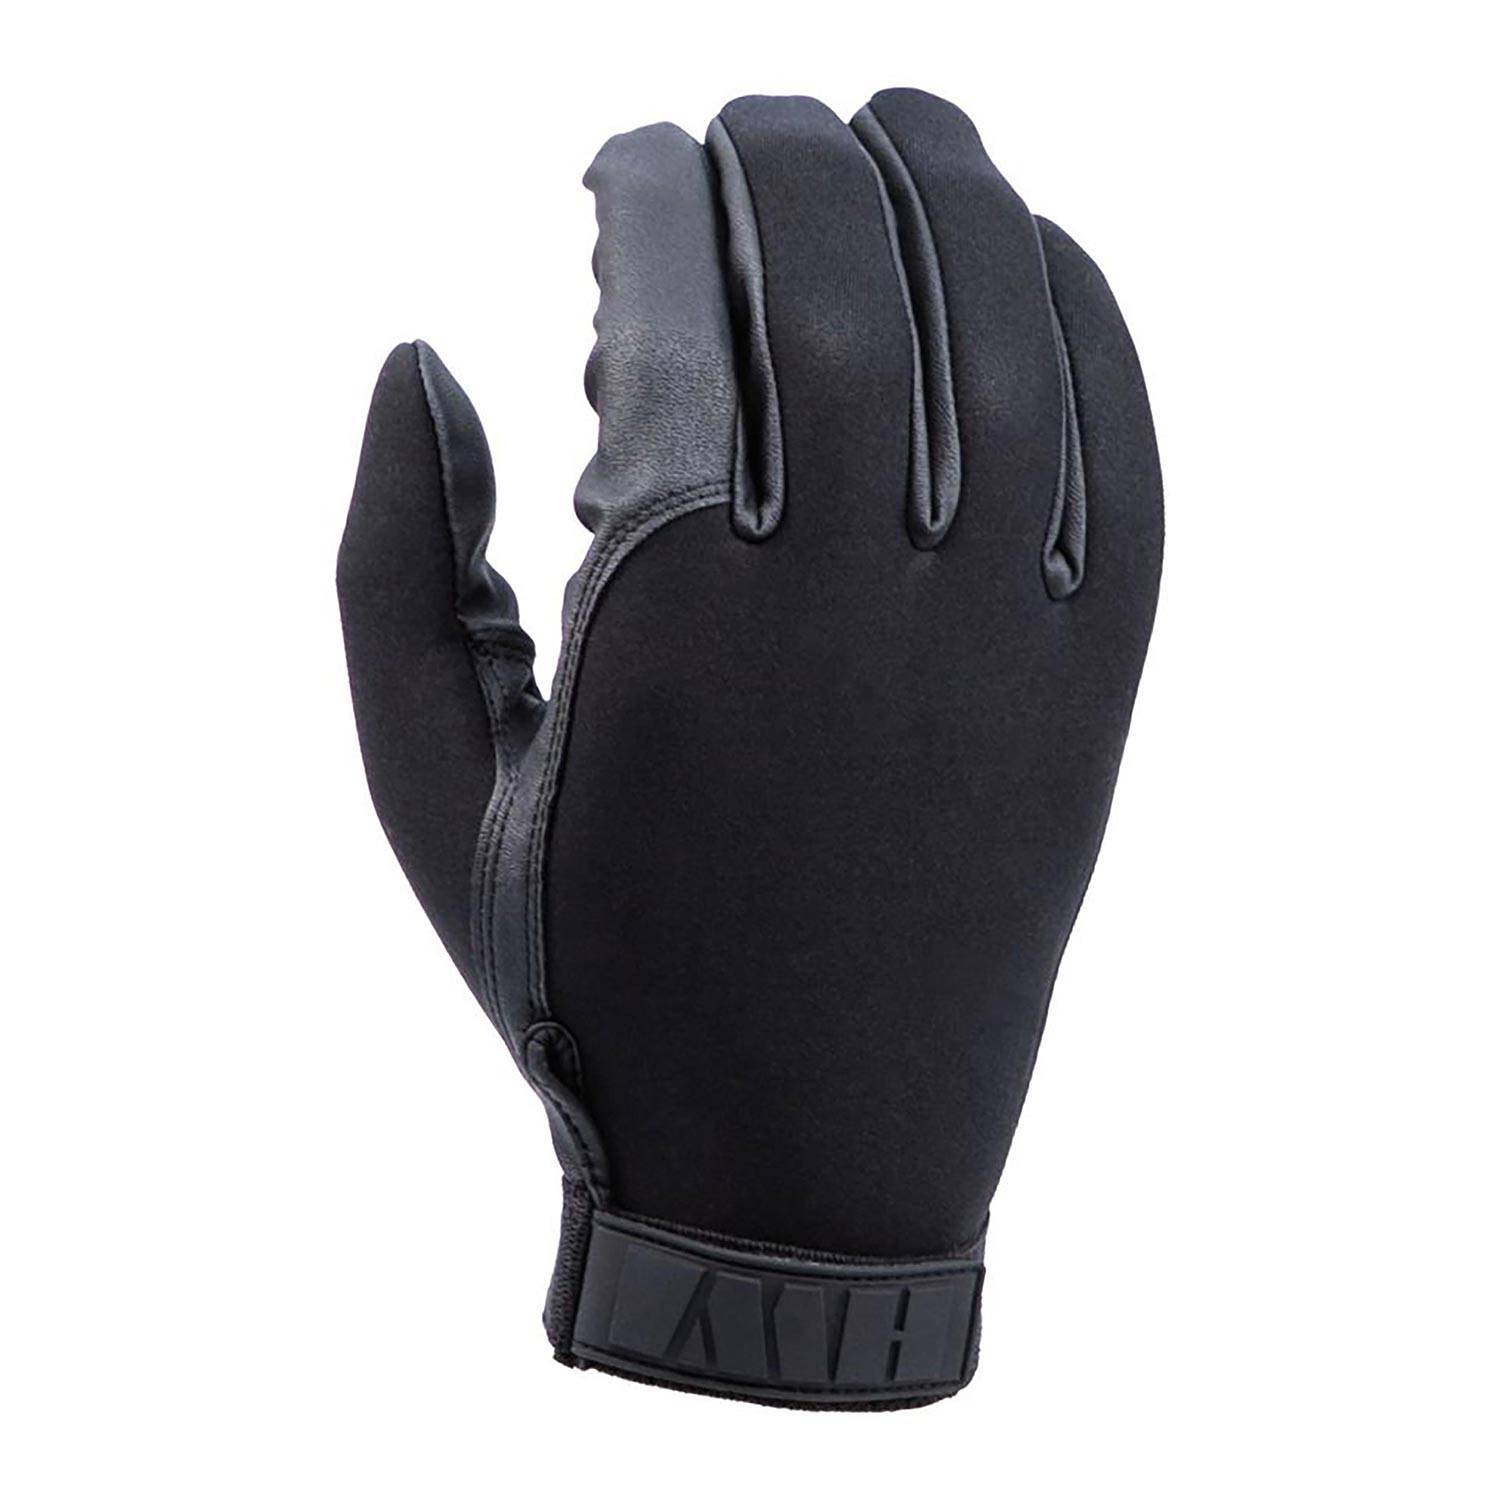 HWI Gear Neoprene Duty Gloves